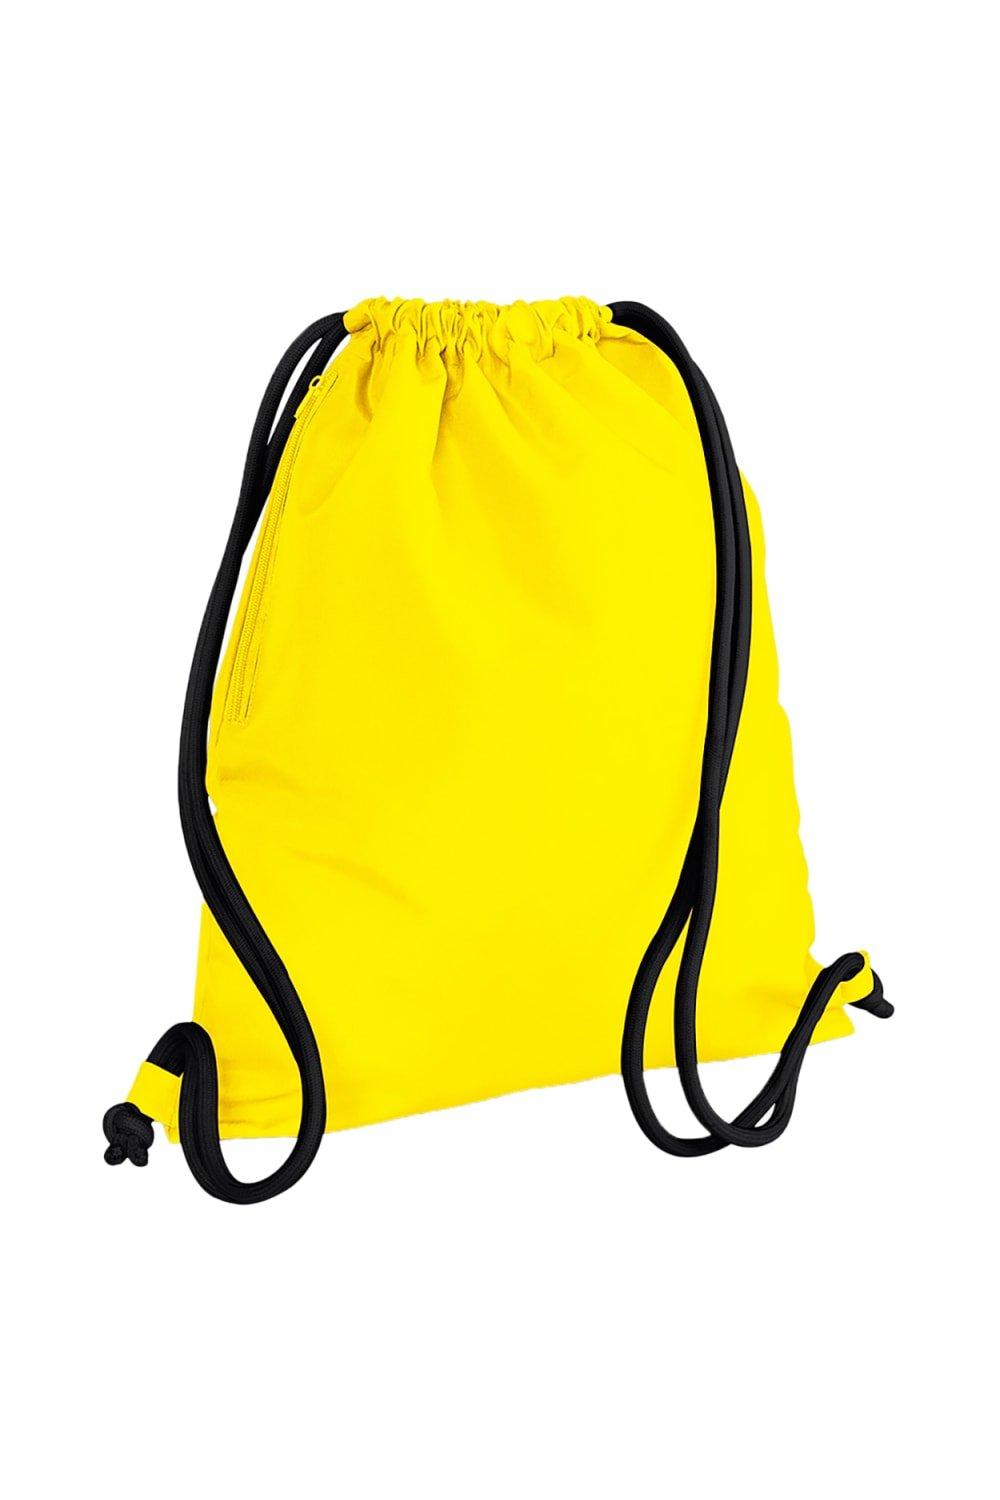 Сумка Icon на шнурке / Gymsac Bagbase, желтый сумка urban gymsac на шнурке sol s фиолетовый